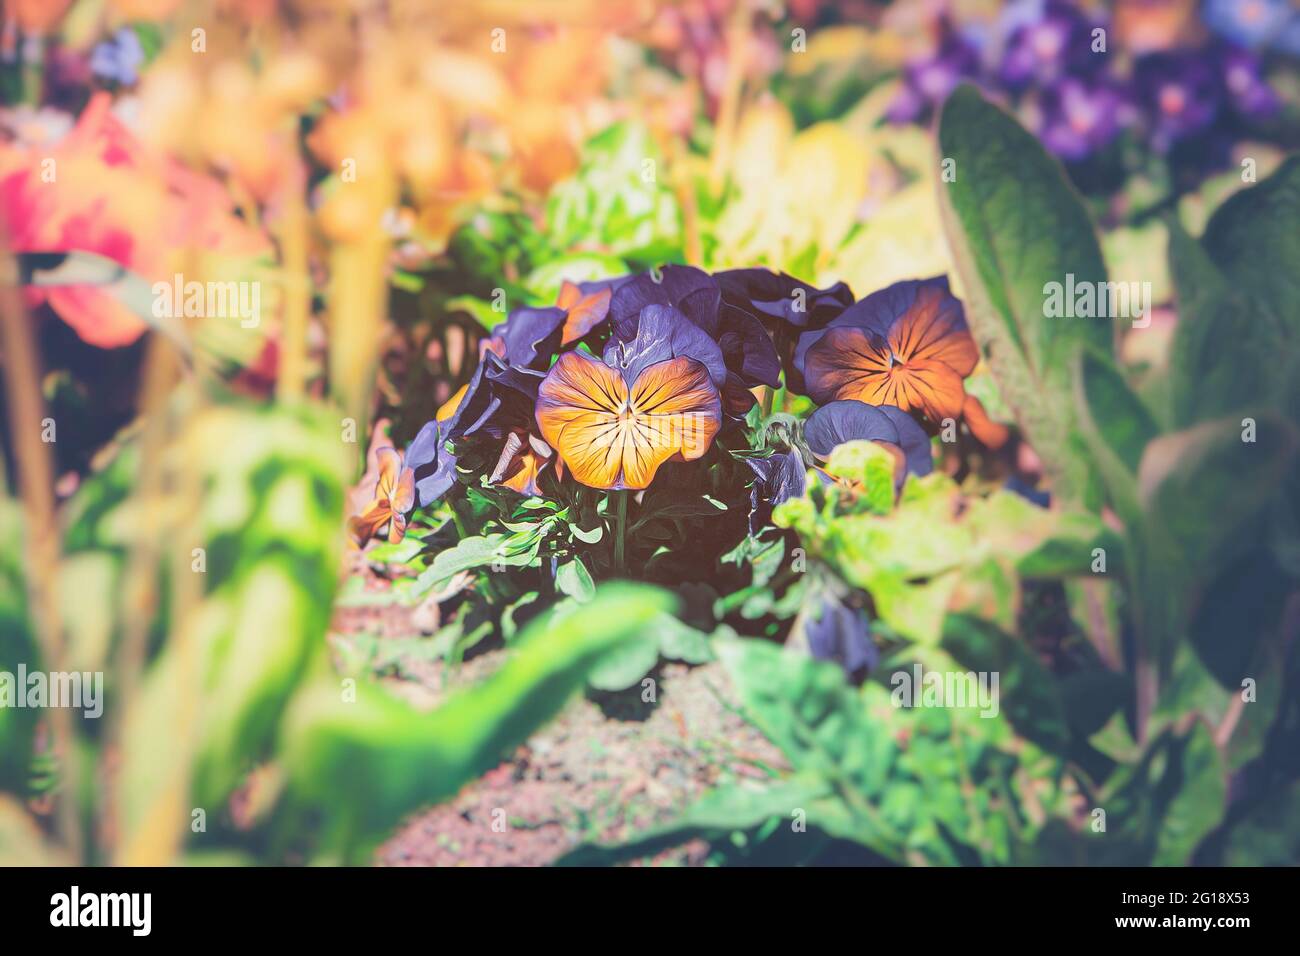 Lebendiges und farbenfrohes Blumenmeer aus Tulpen im Sommer - Bunte Familie aus lila Blumen im Gruga Park in Nordrhein Westfalen Stock Photo